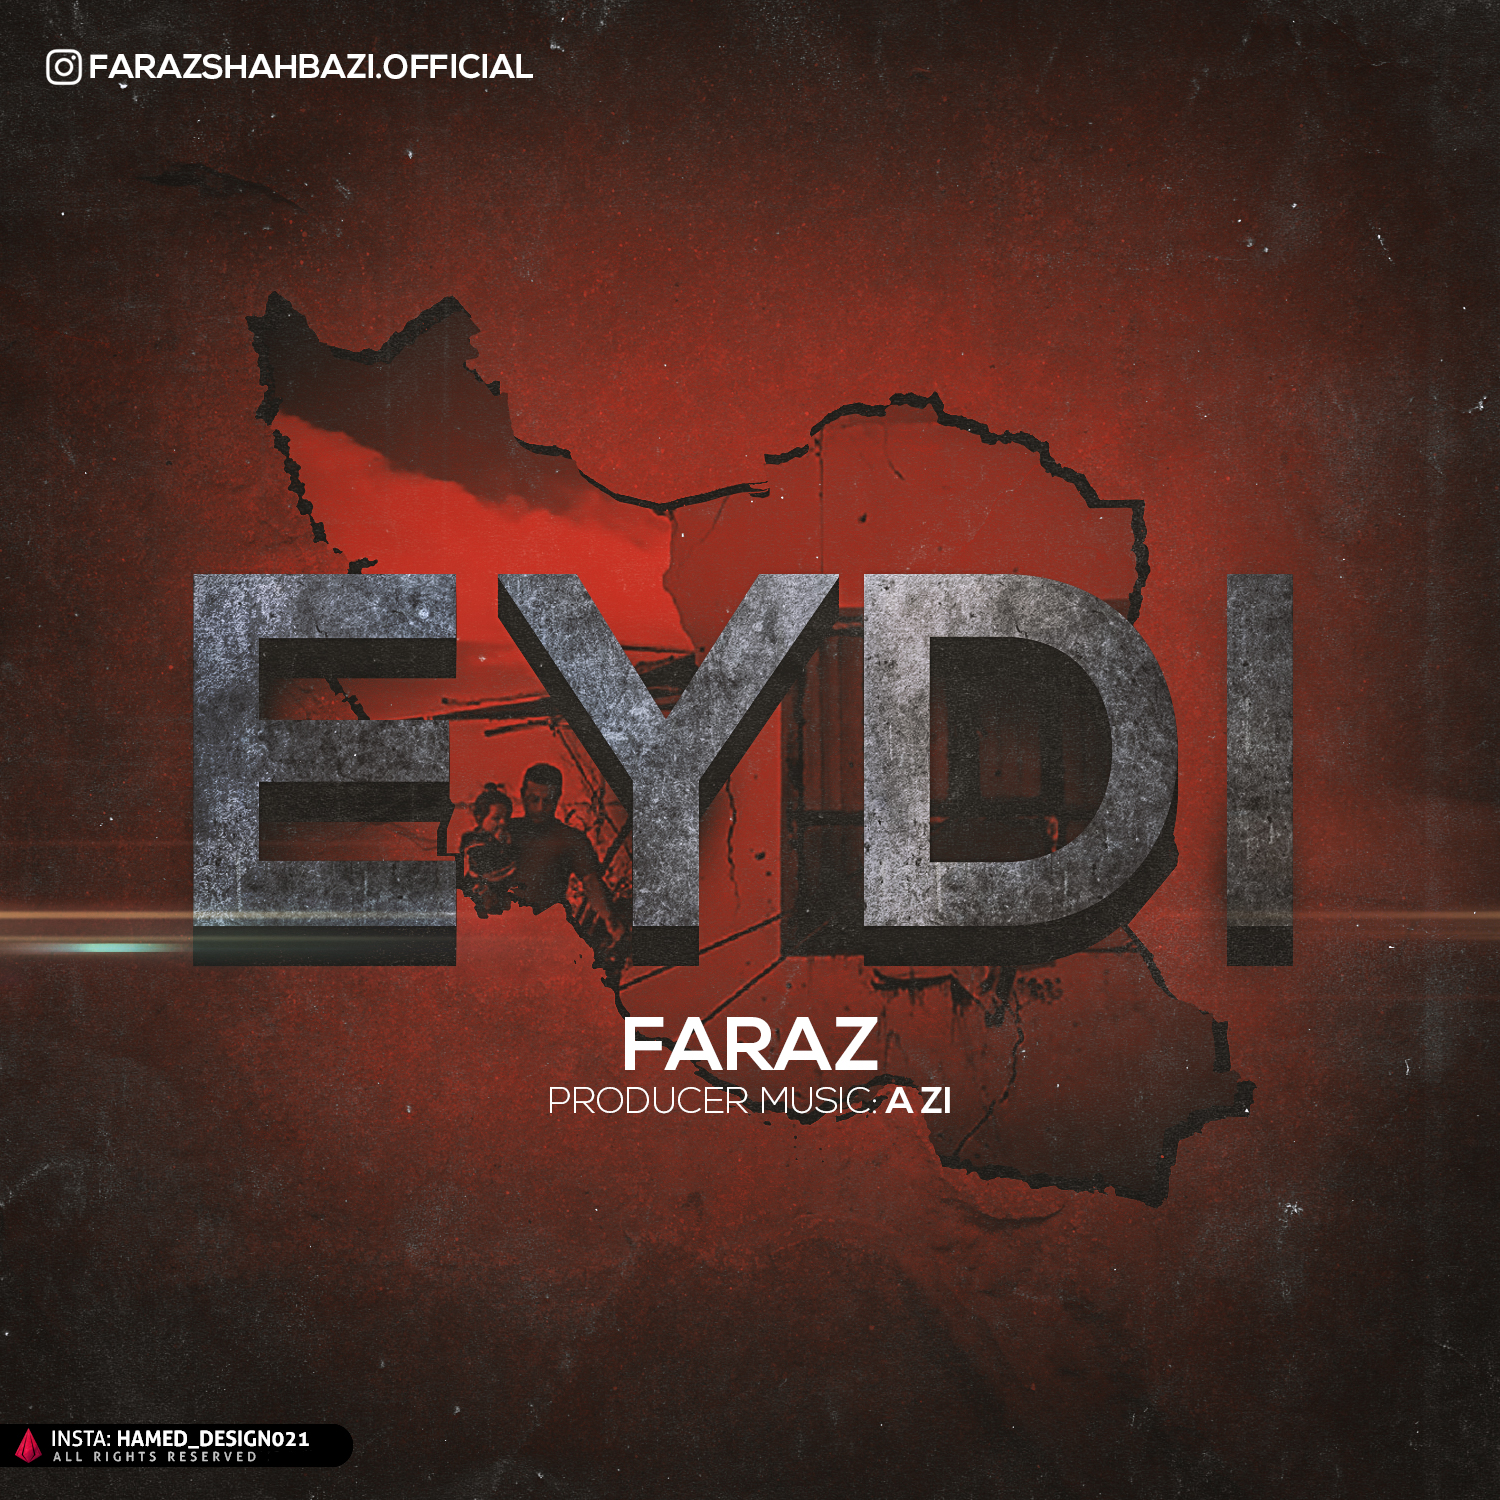  دانلود آهنگ جدید فراز - عیدی | Download New Music By Faraz - Eydi